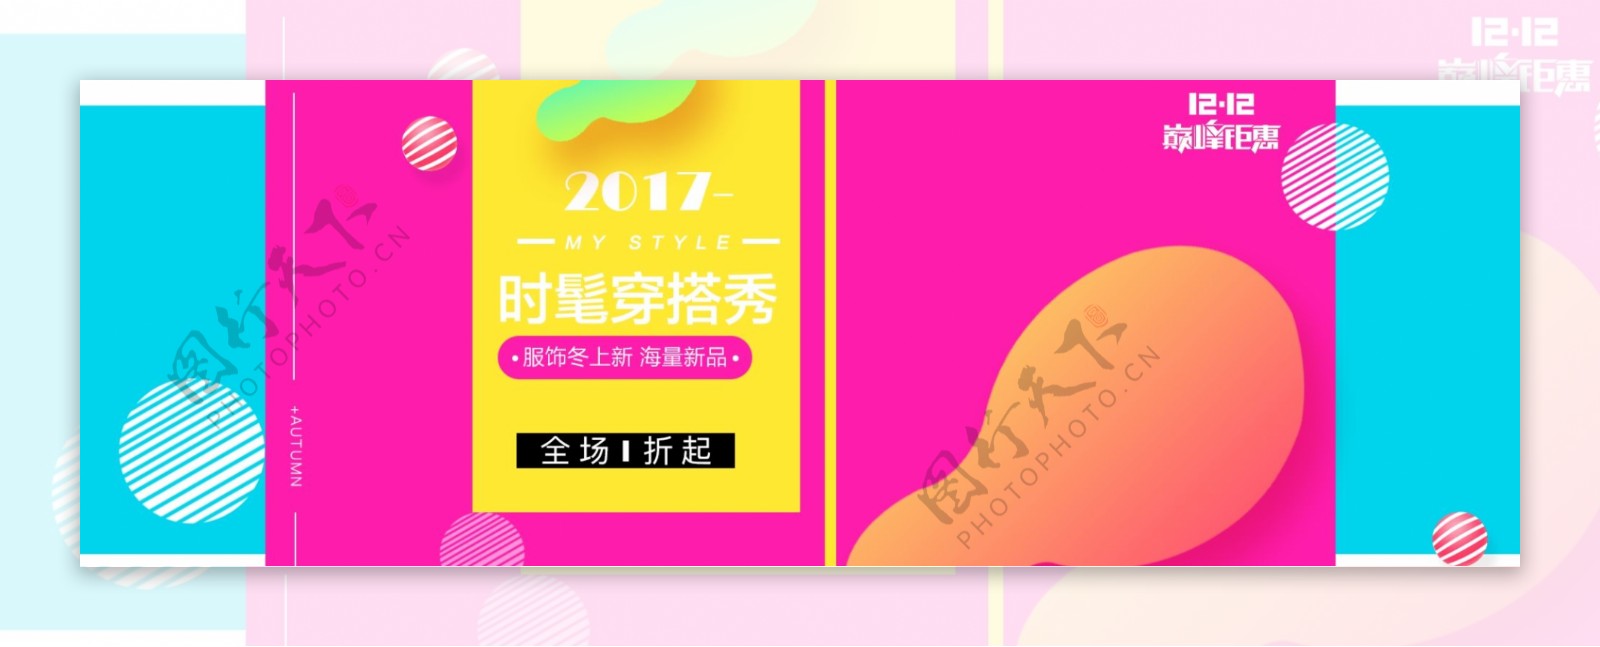 双12双十二淘宝服饰促销活动banner